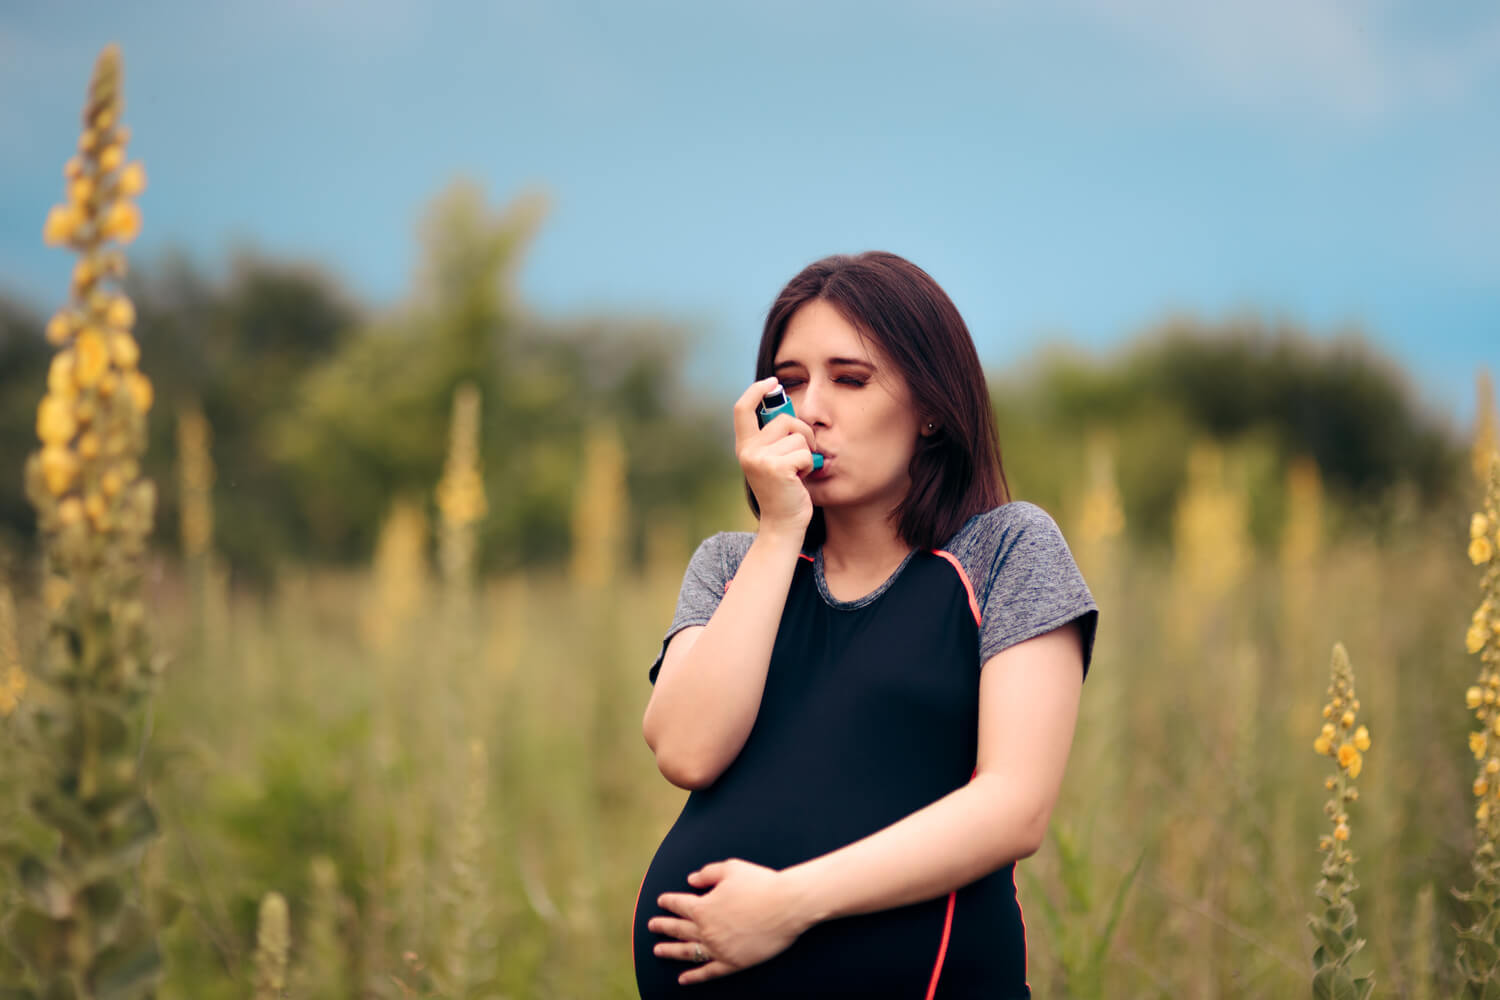 bronchitis during pregnancy